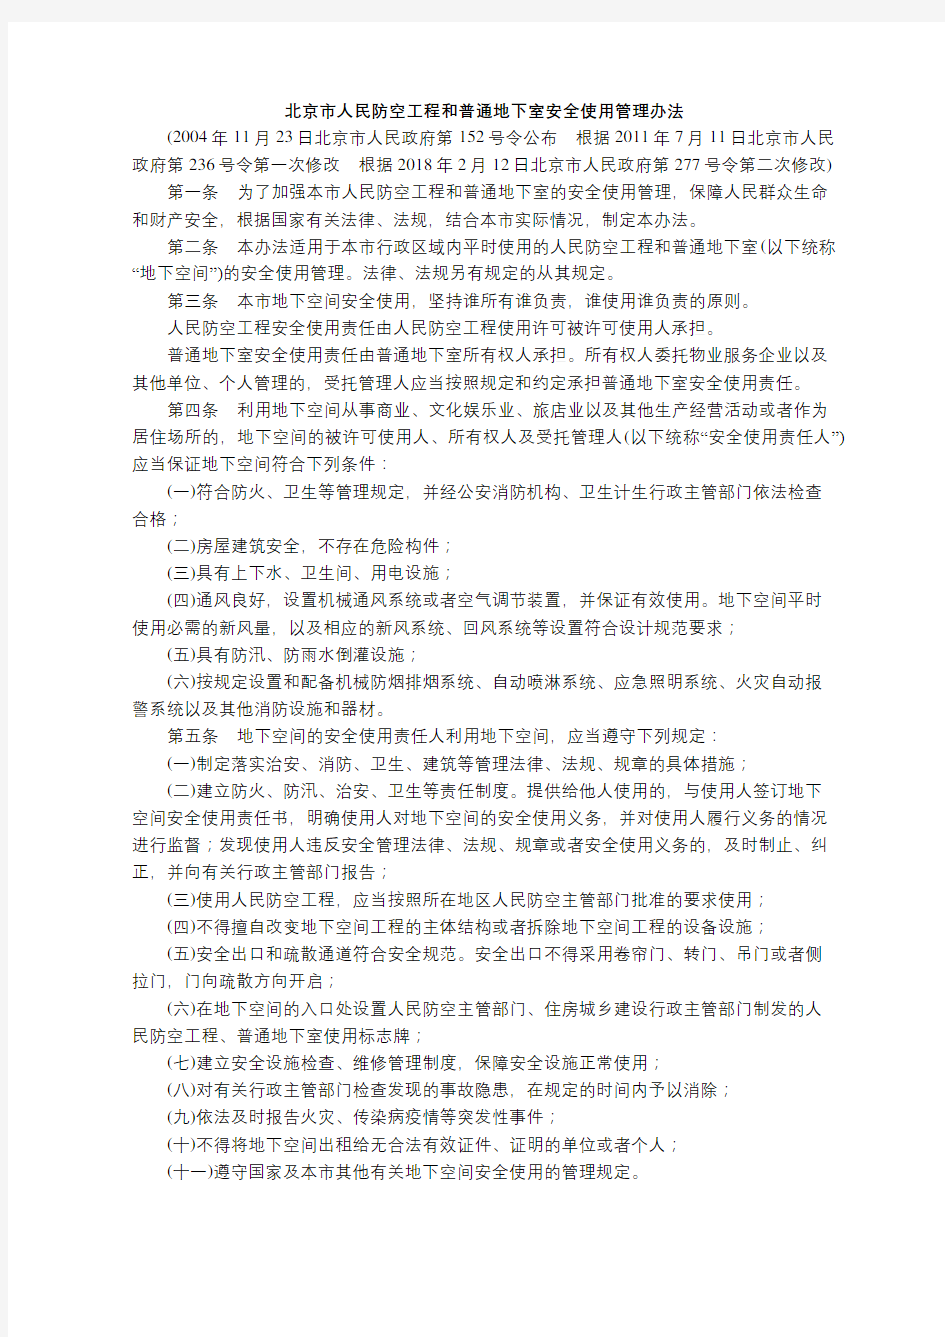 【全文】《北京市人民防空工程和普通地下室安全使用管理办法》(自2018年2月12日起施行)